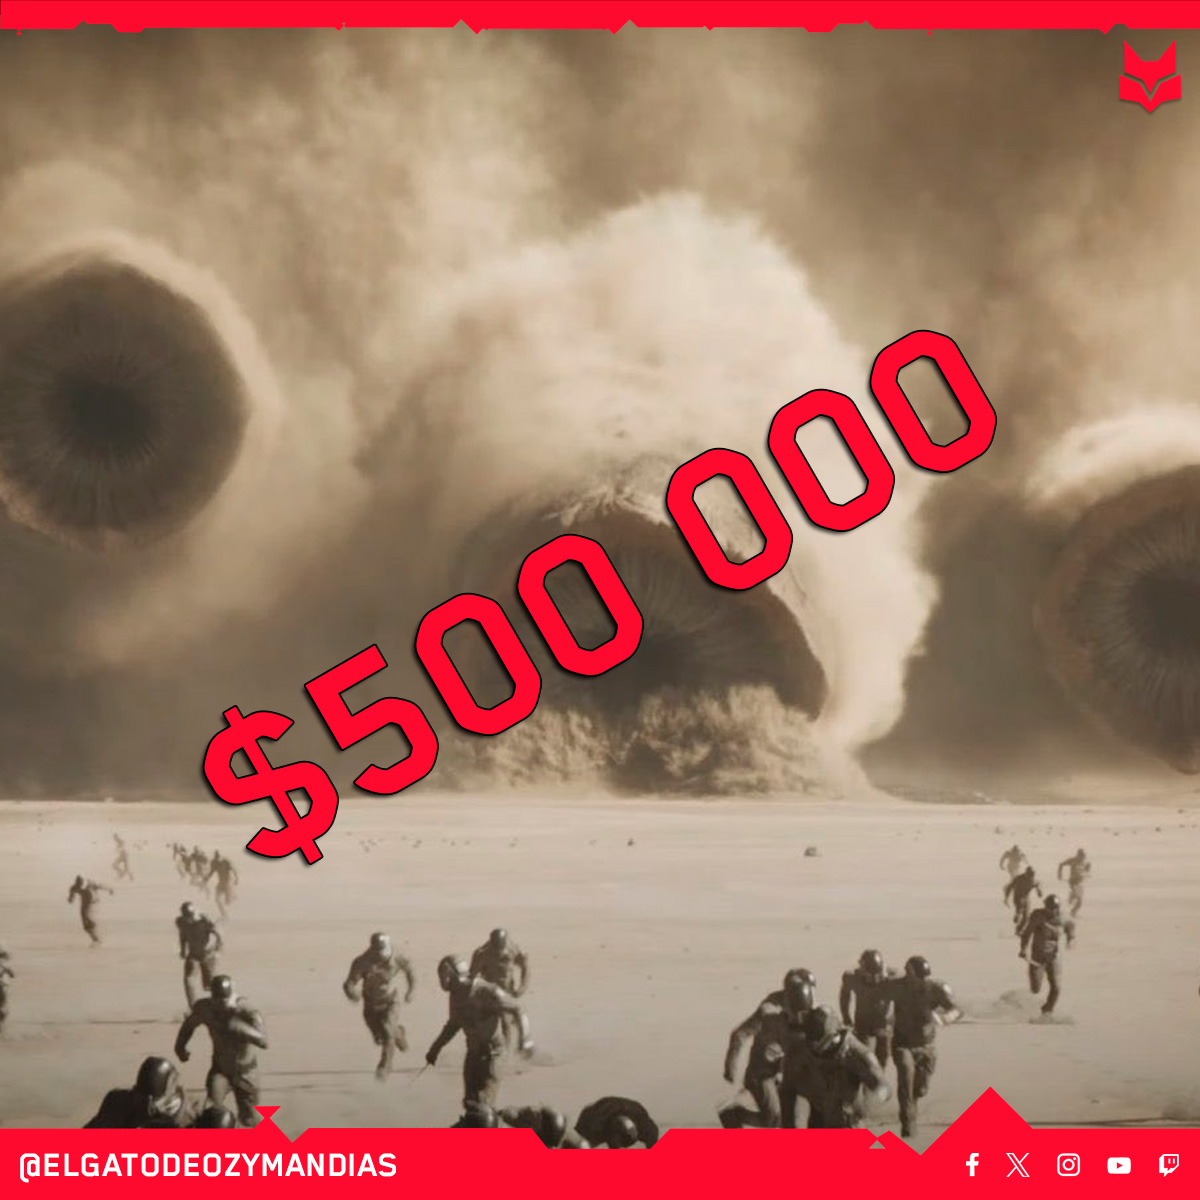 #DuneParteDos pasó los 500 Millones a nivel mundial y va rumbo a los... ¿Cuánto creen que recaudará?